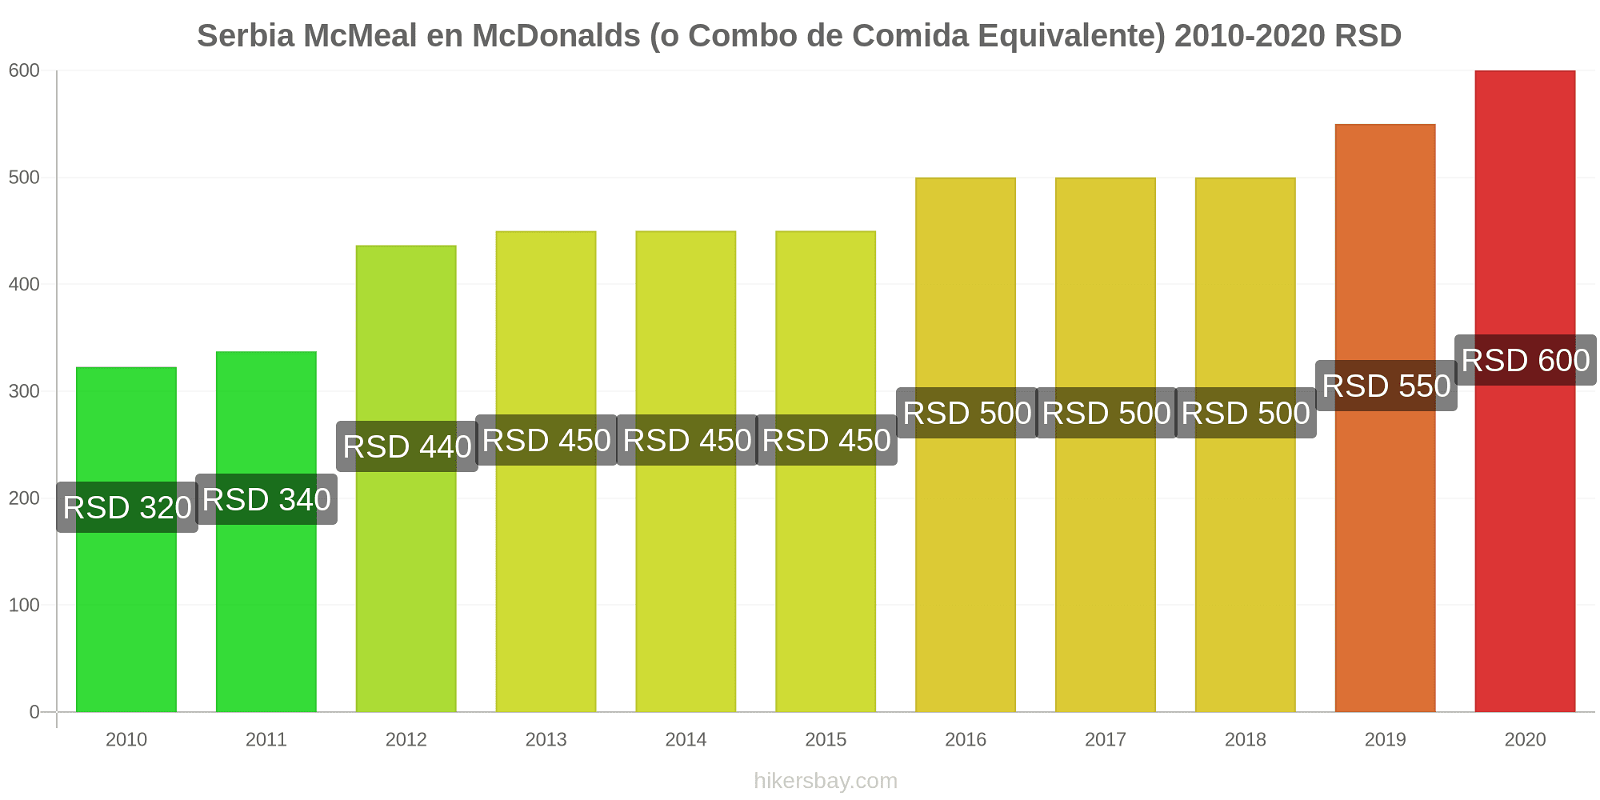 Serbia cambios de precios McMeal en McDonalds (o menú equivalente) hikersbay.com